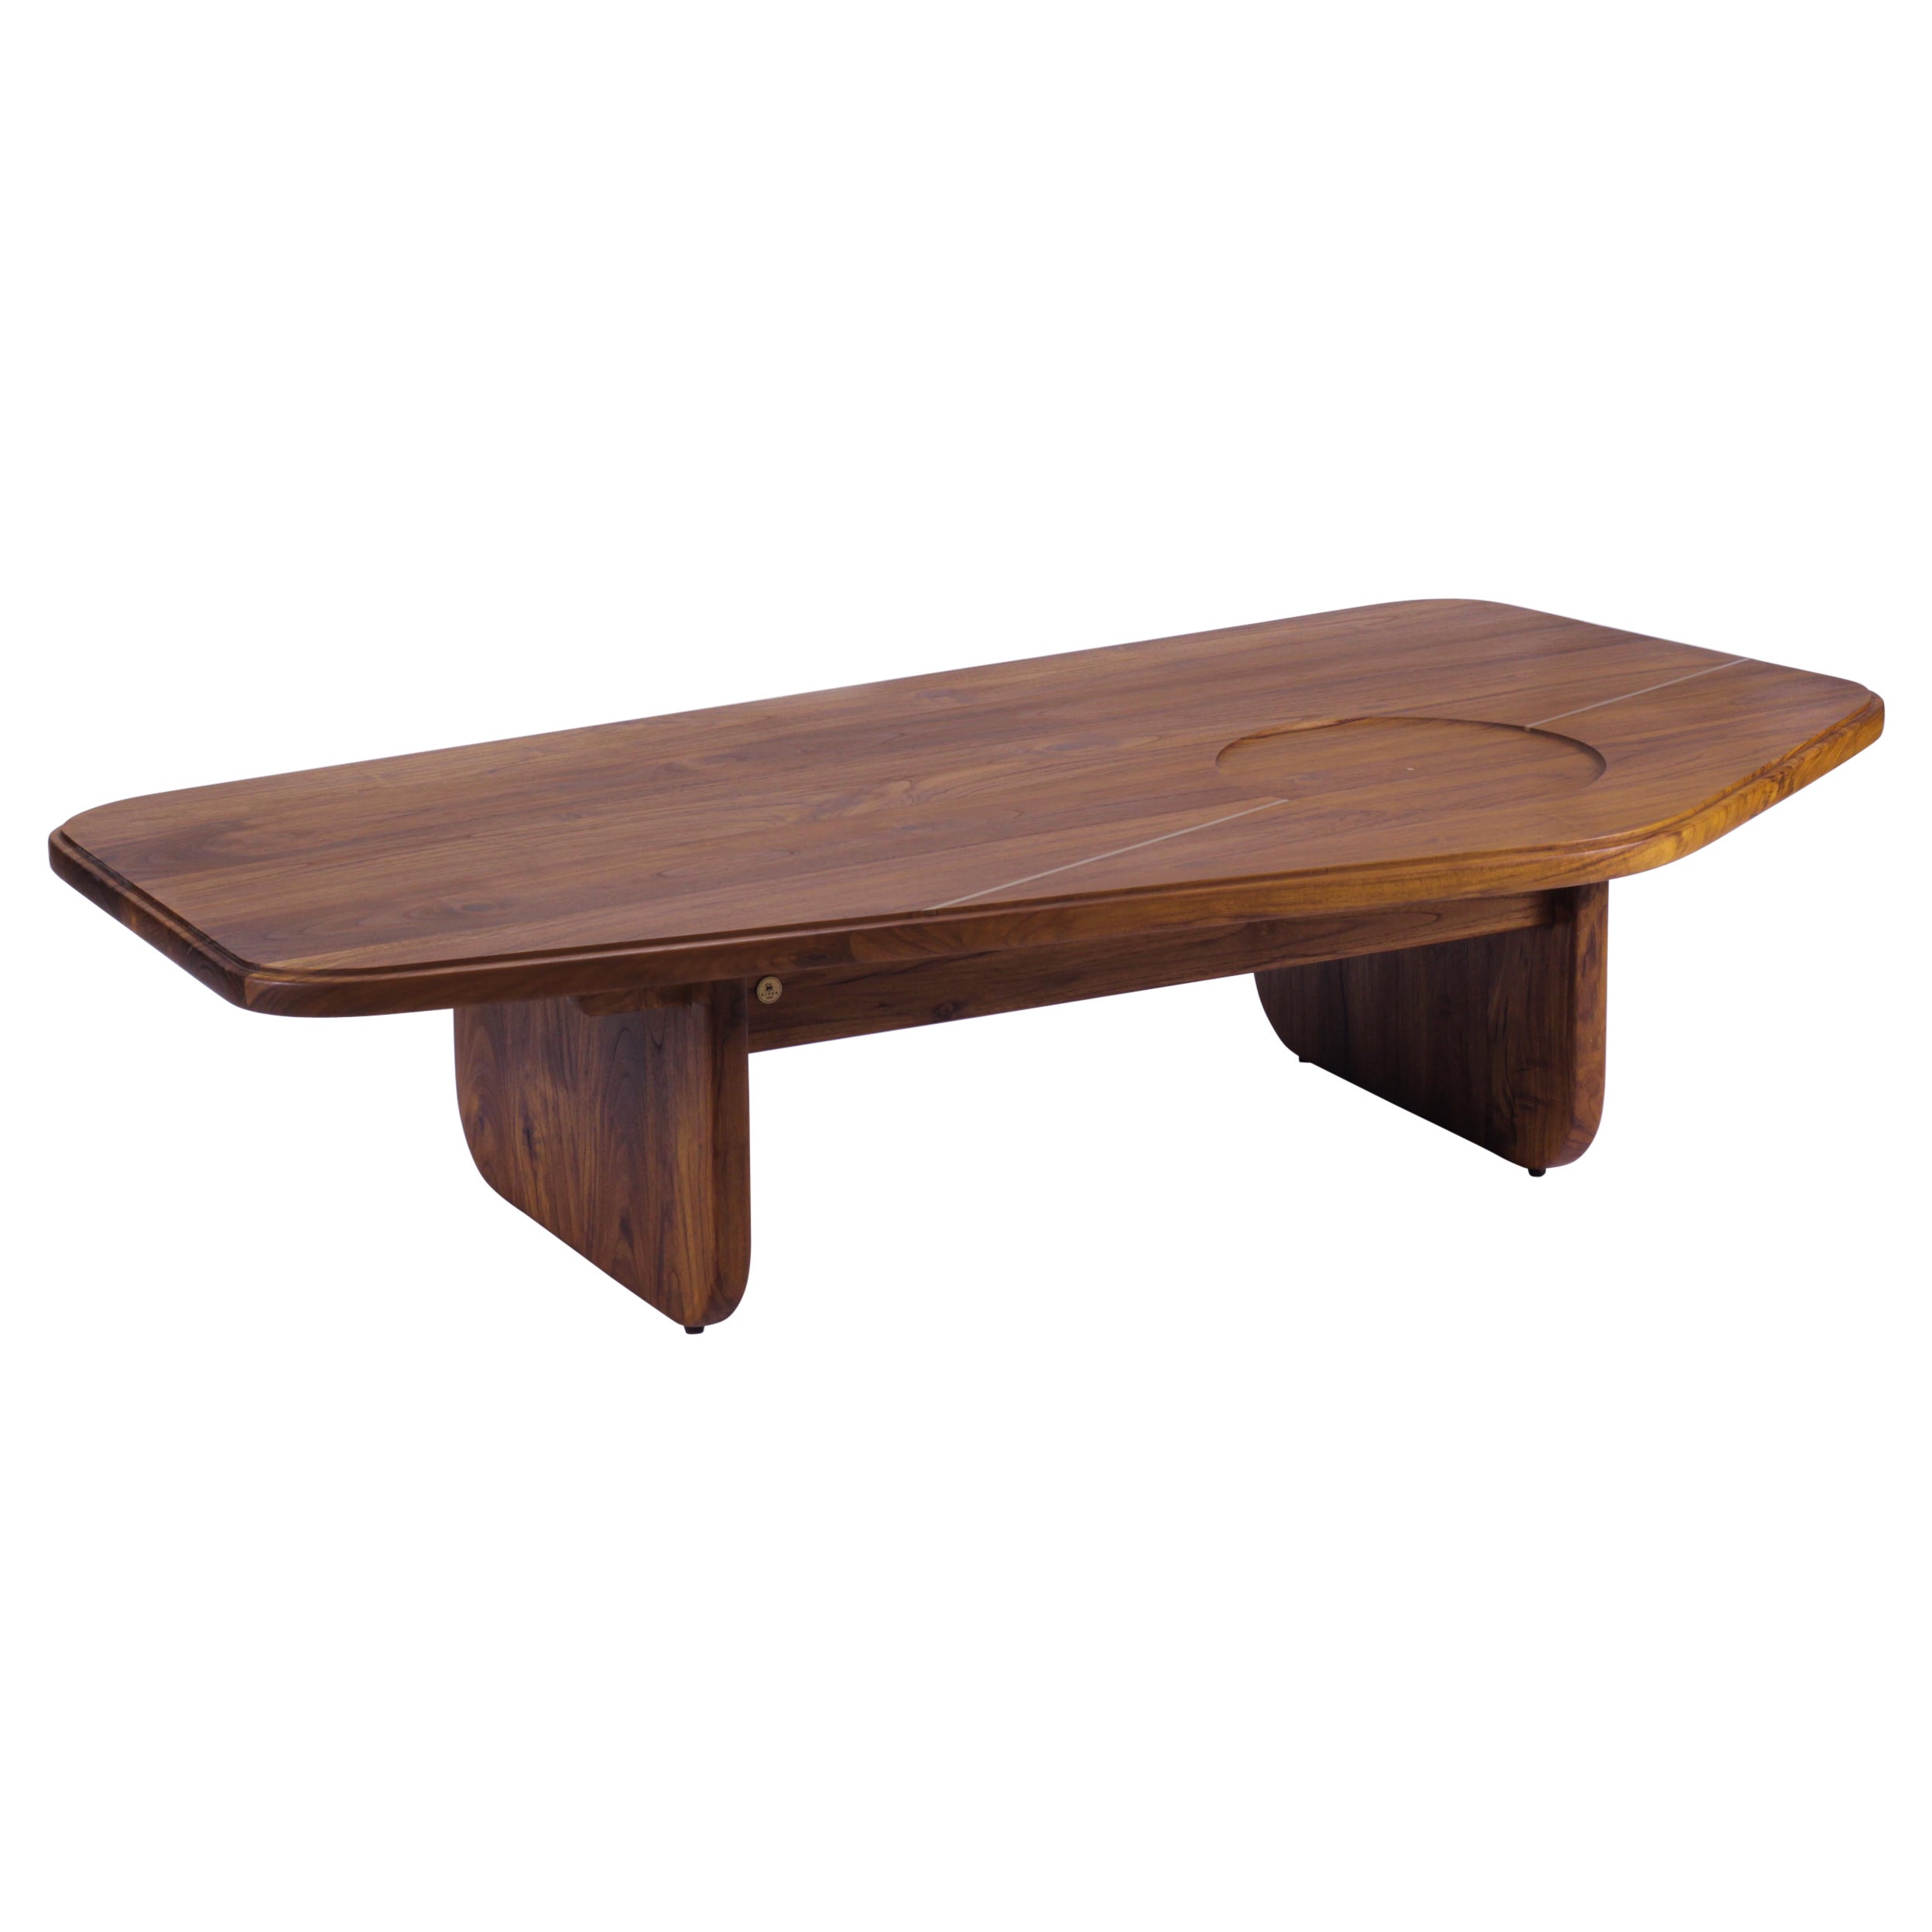 Table basse organique minimaliste en chêne massif fabriquée à la main avec incrustation en laiton